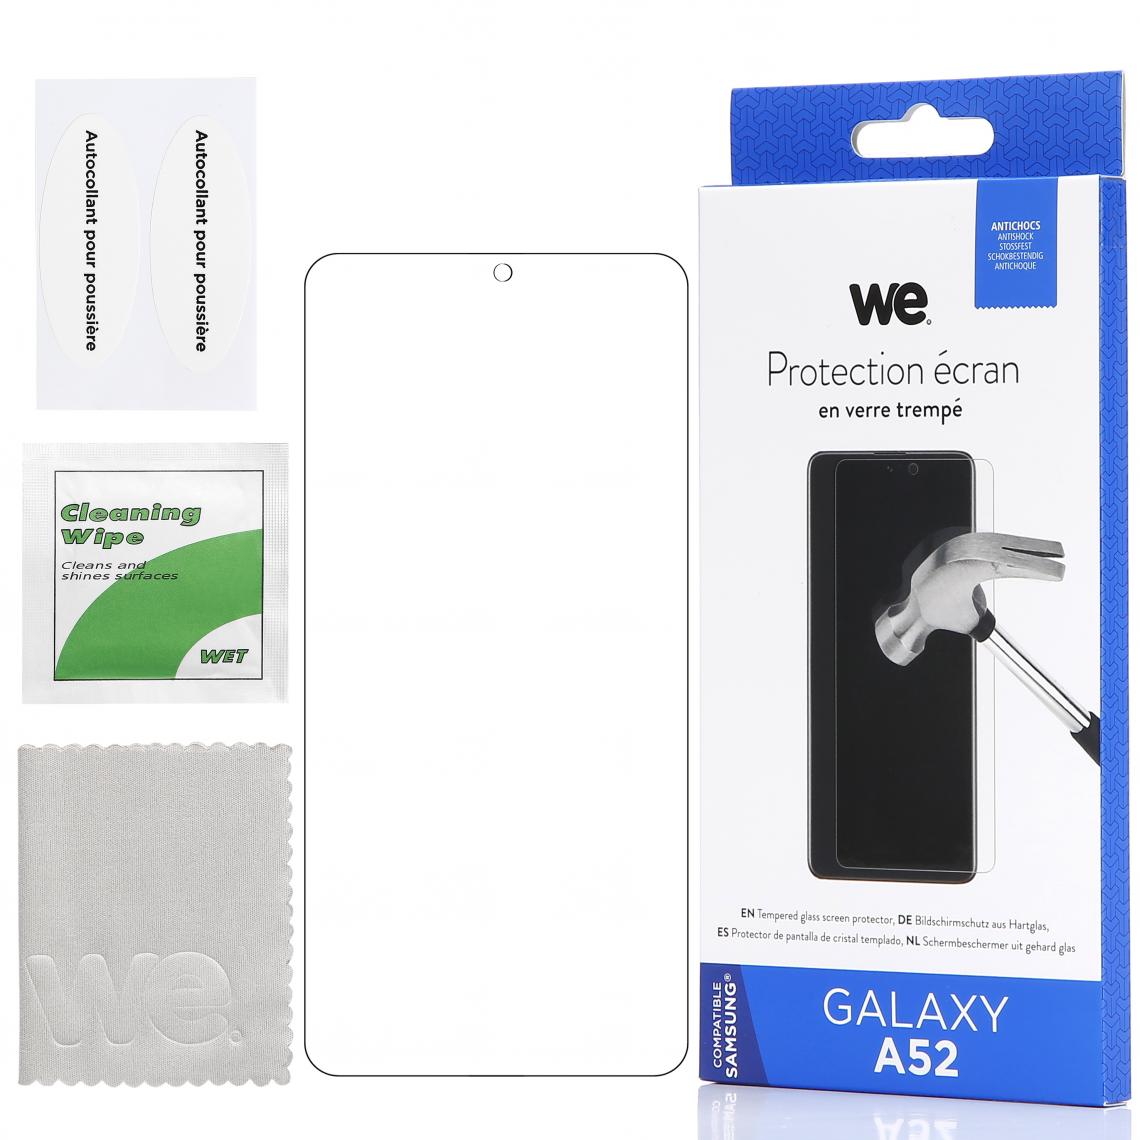 We - WE Verre Trempé pour Samsung Galaxy A52- Film Protection écran Anti-Rayures - Anti-Bulles d'air Ultra Résistant - Dureté 9H Glass - Coque, étui smartphone